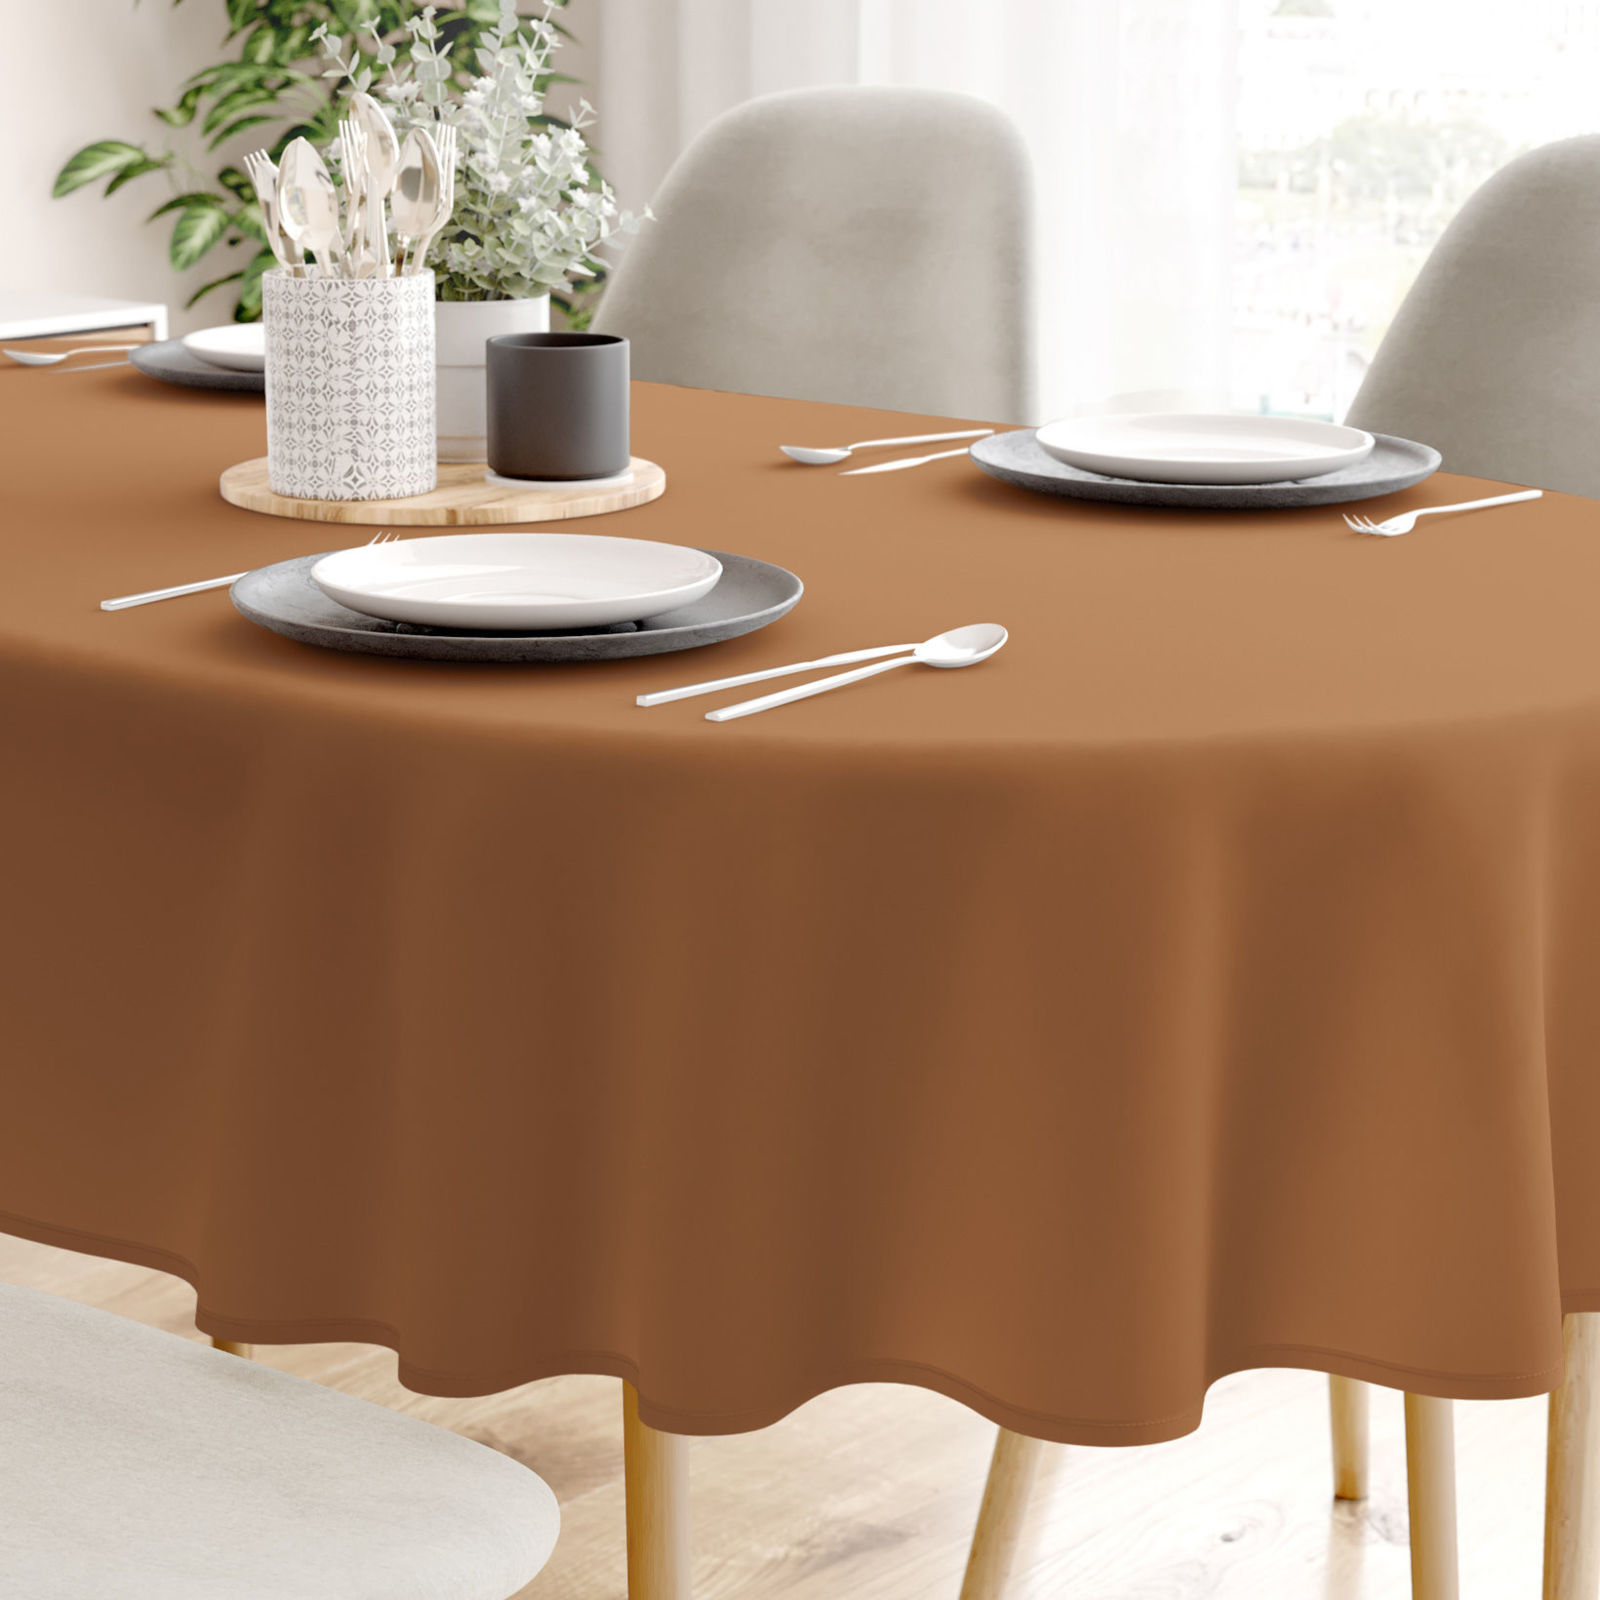 Pamut asztalterítő - fahéj színű - ovális